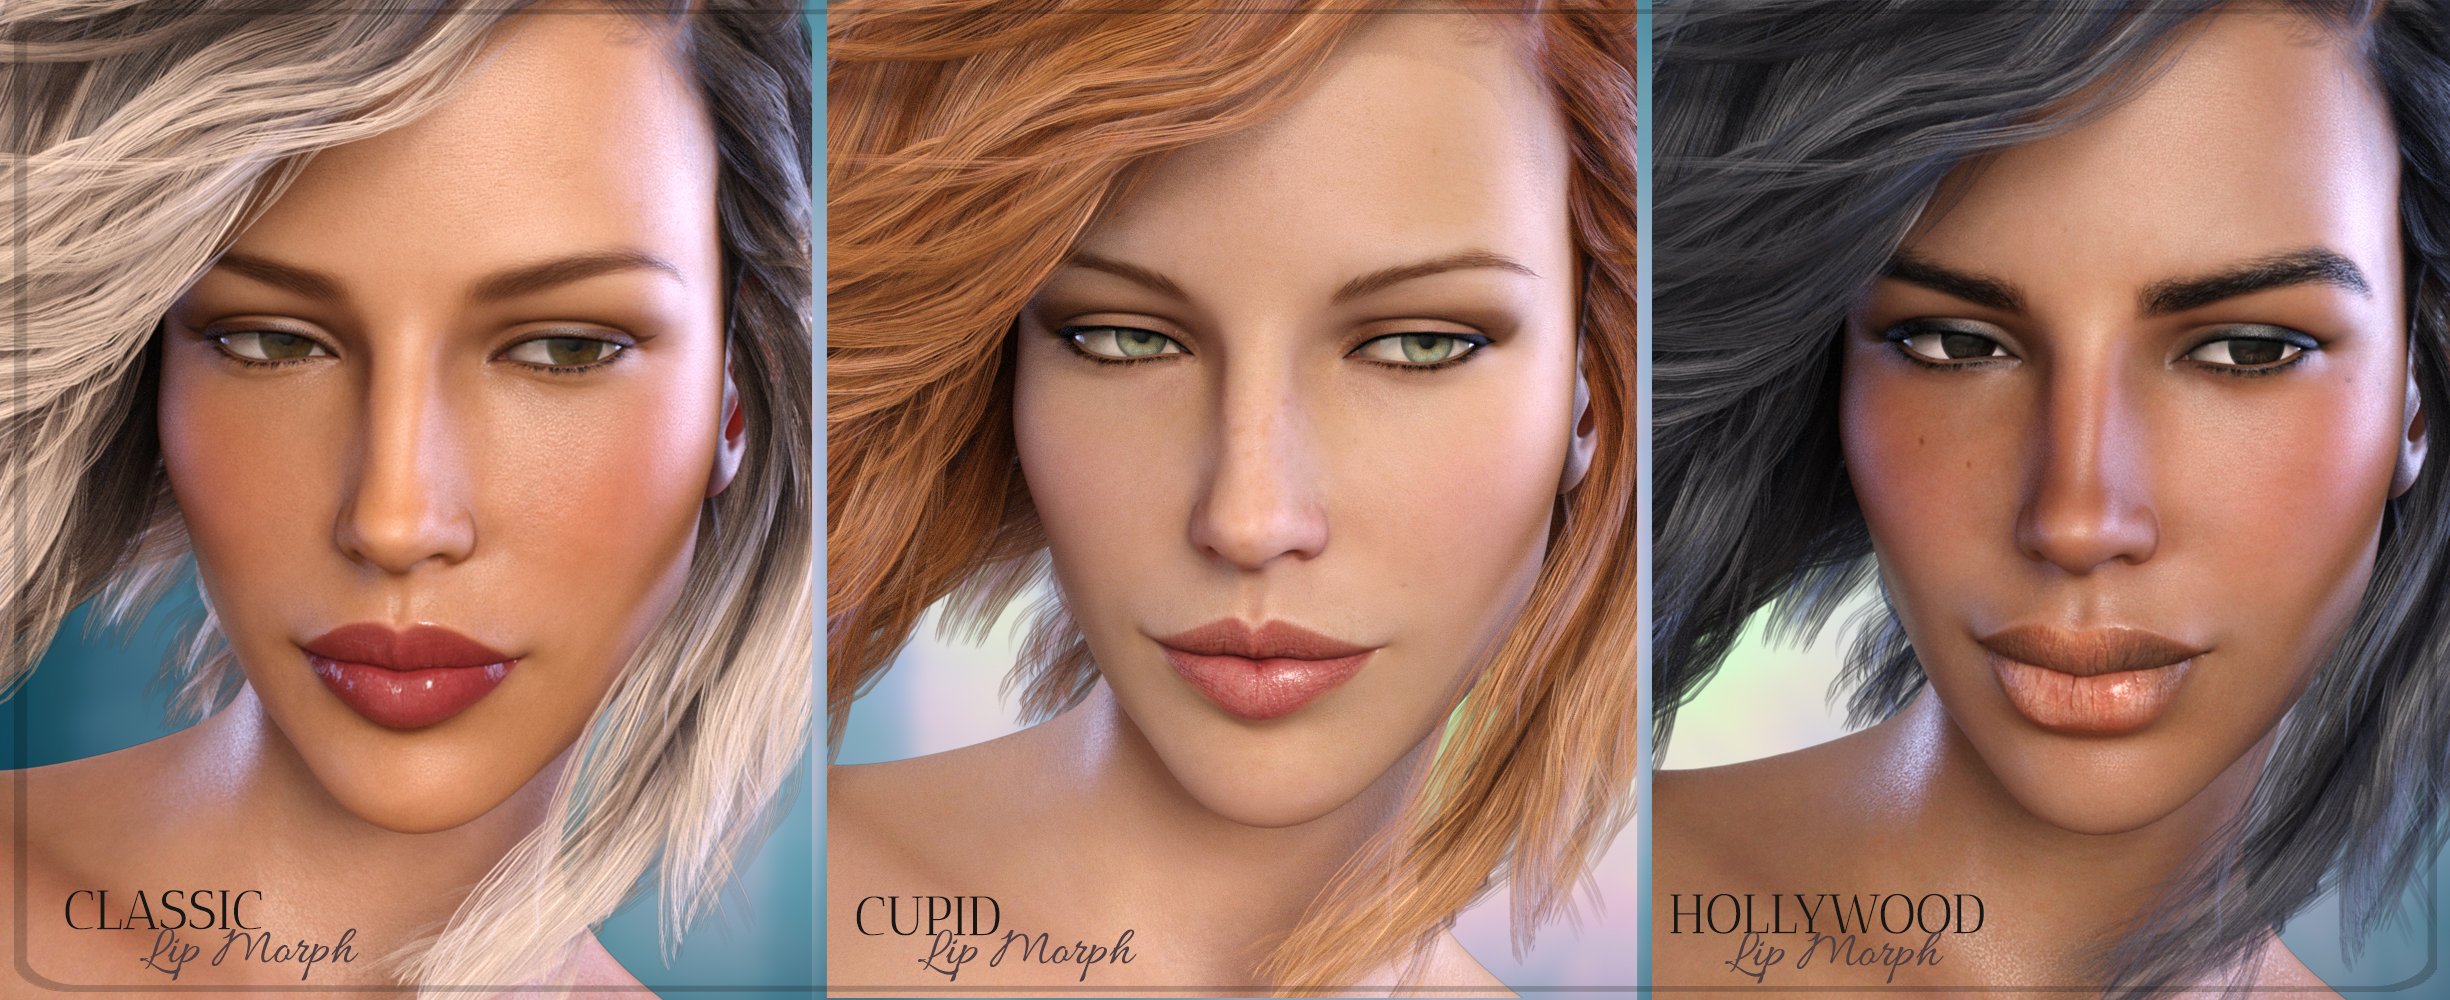 Z Sensuous Lip Morphs for Genesis 8 Female by: Zeddicuss, 3D Models by Daz 3D